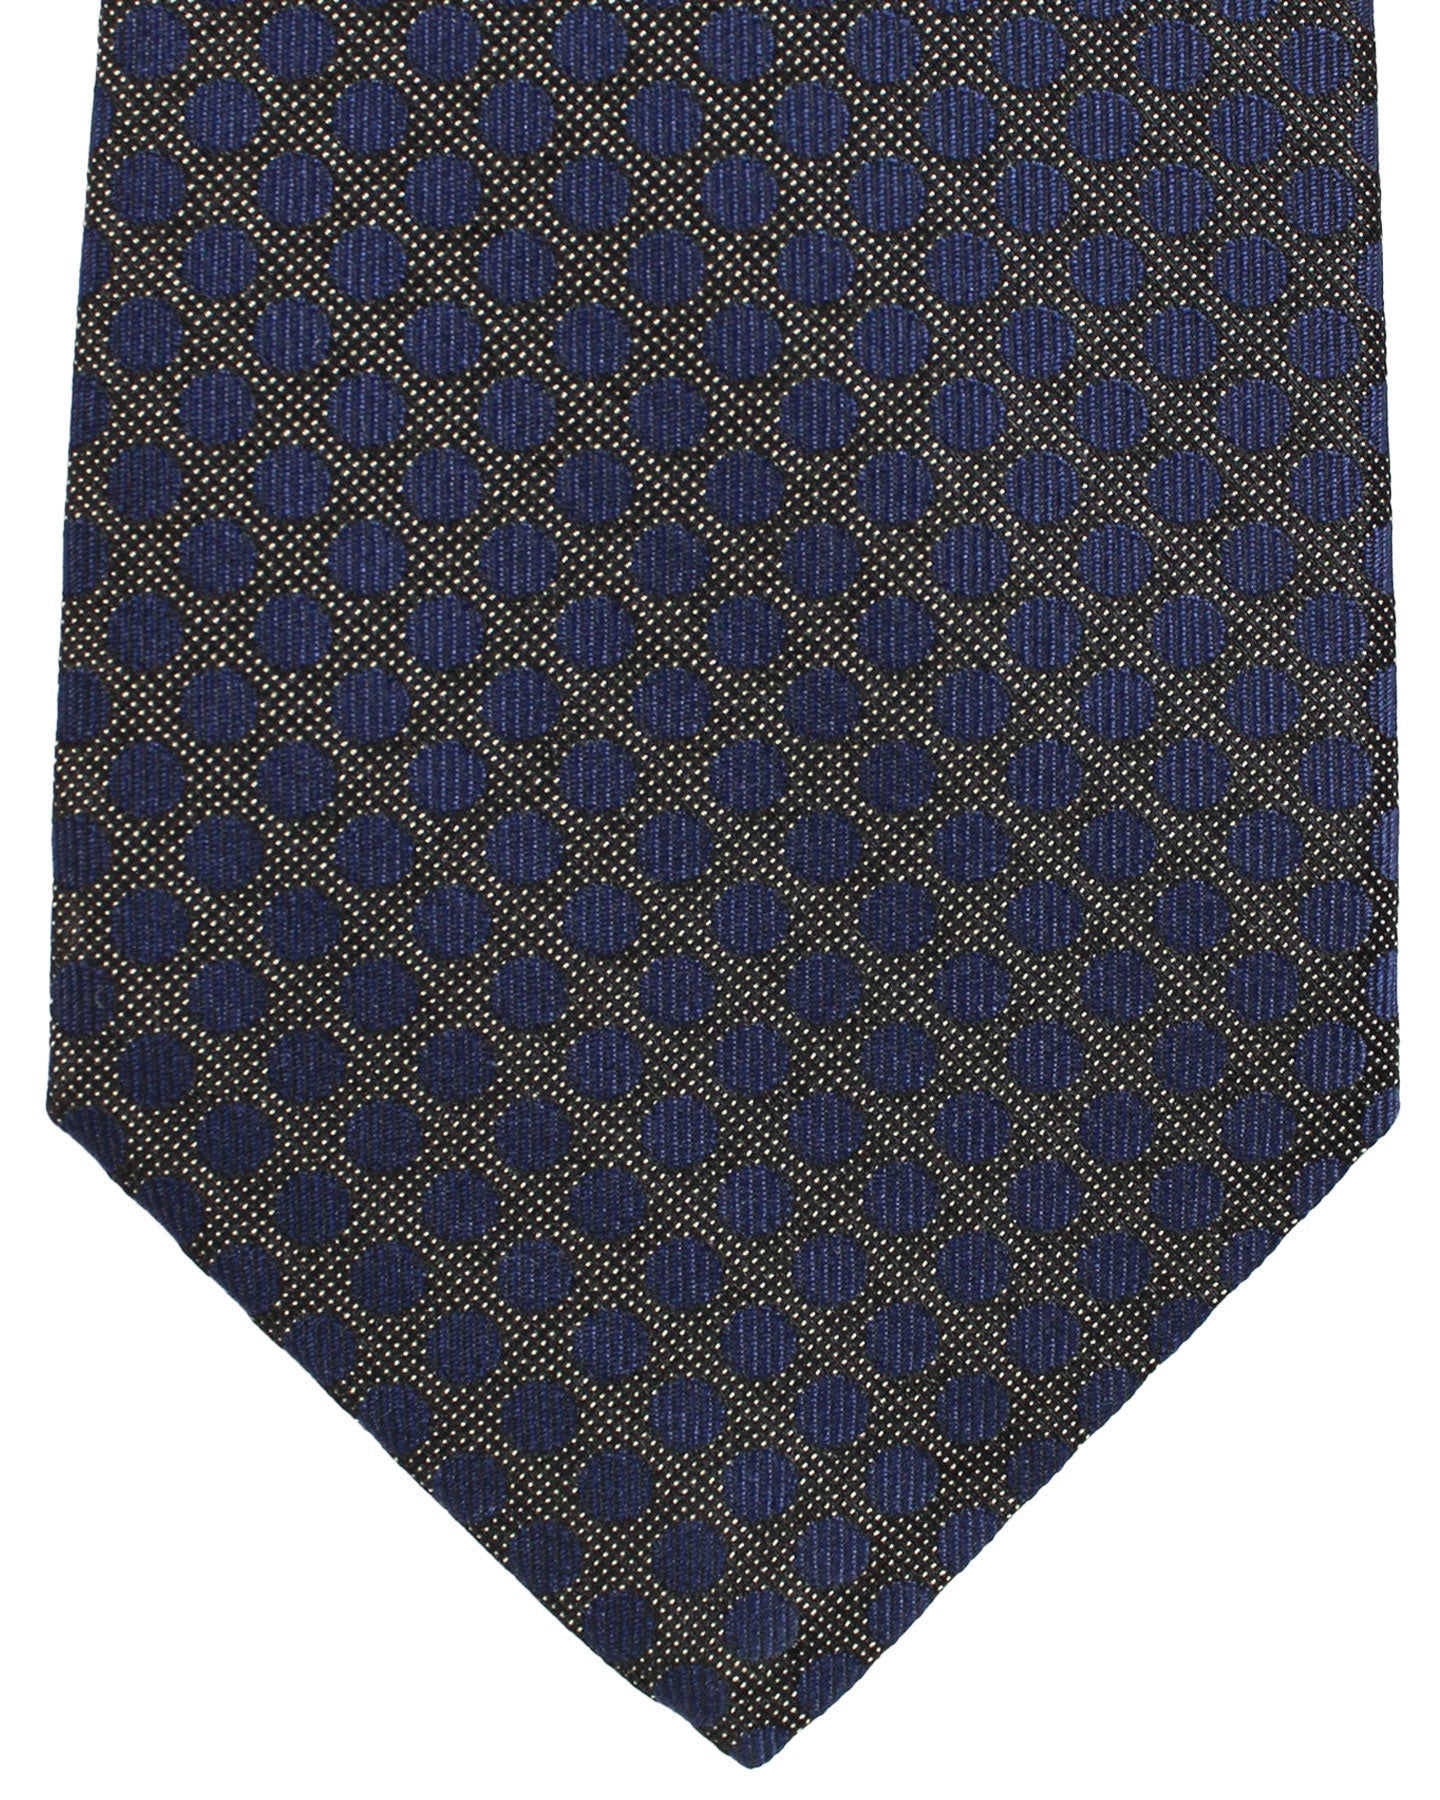 Kiton Silk Tie Midnight Blue Dots Design - Sevenfold Necktie